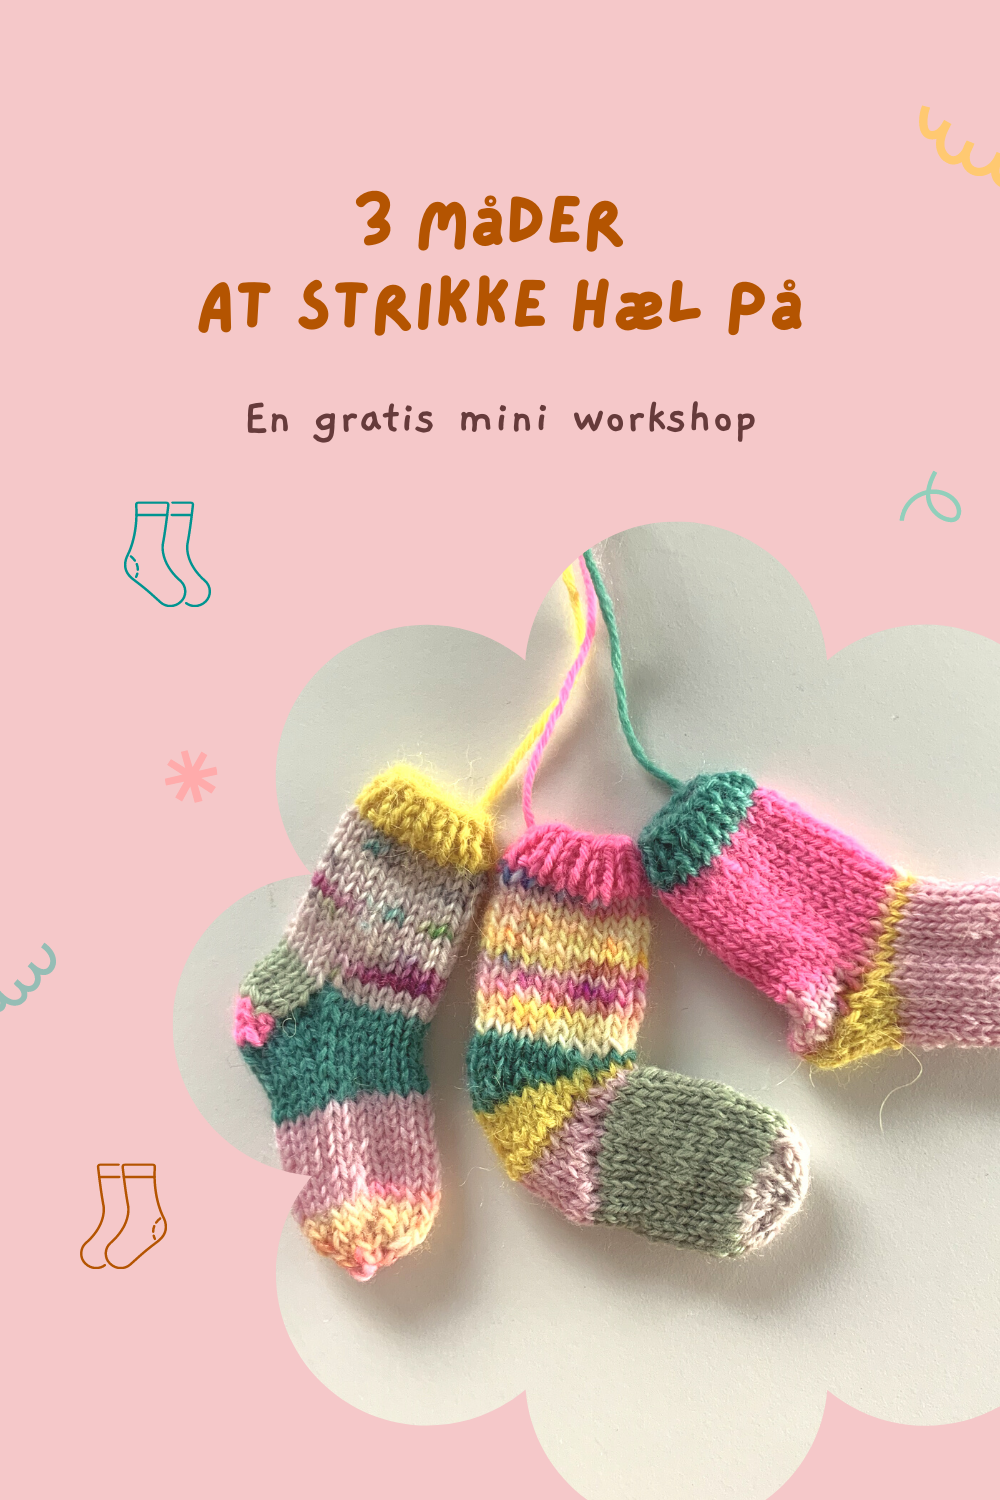 Knitting By Kaae: 3 måder at strikke på, en gratis miniworkshop at sokker